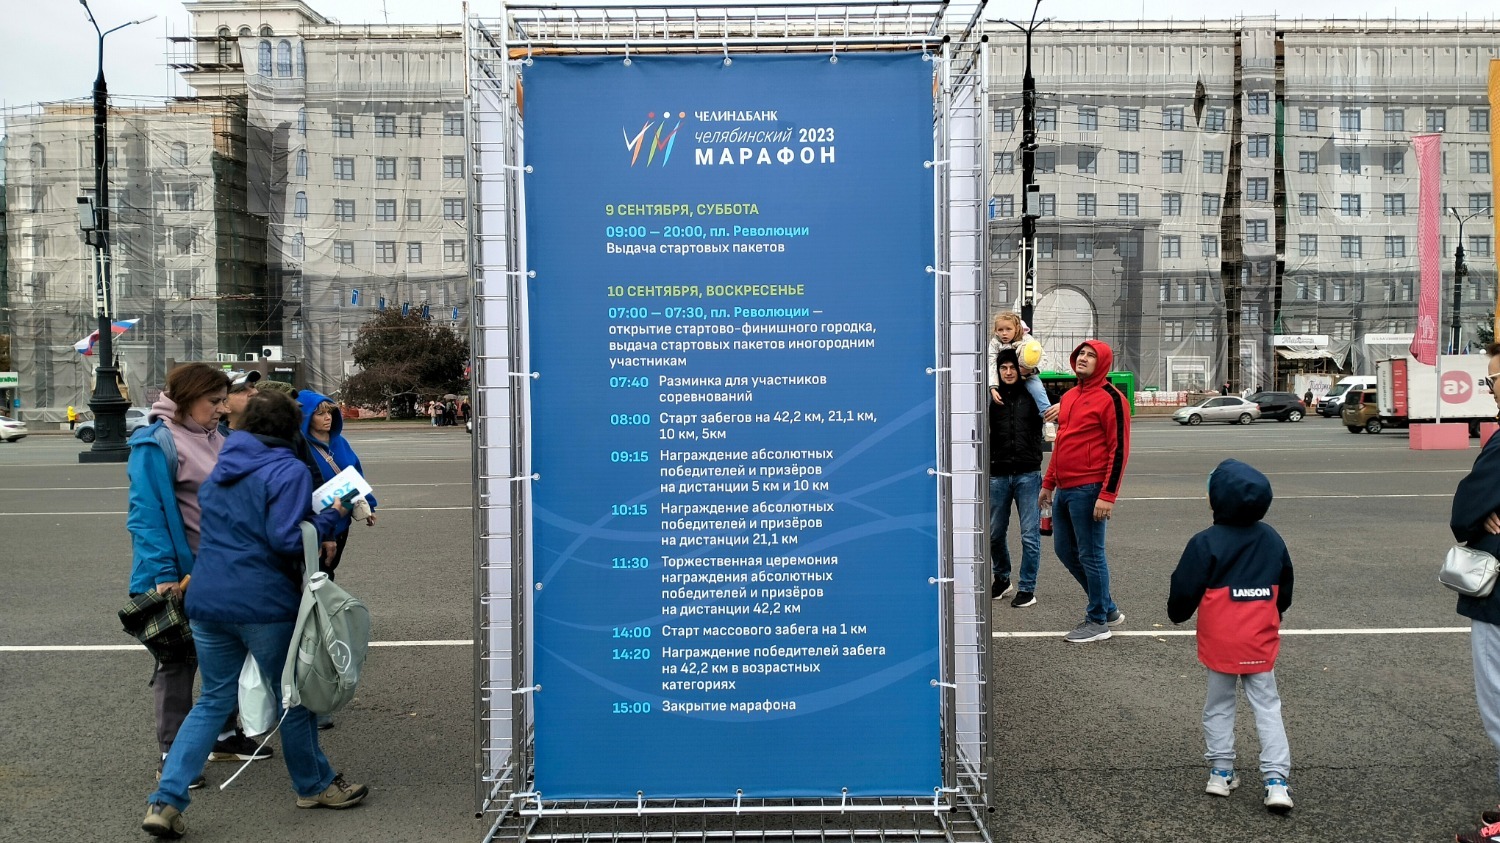 На площади Революции в Челябинске выставили расписание мероприятий марафона 10 сентября